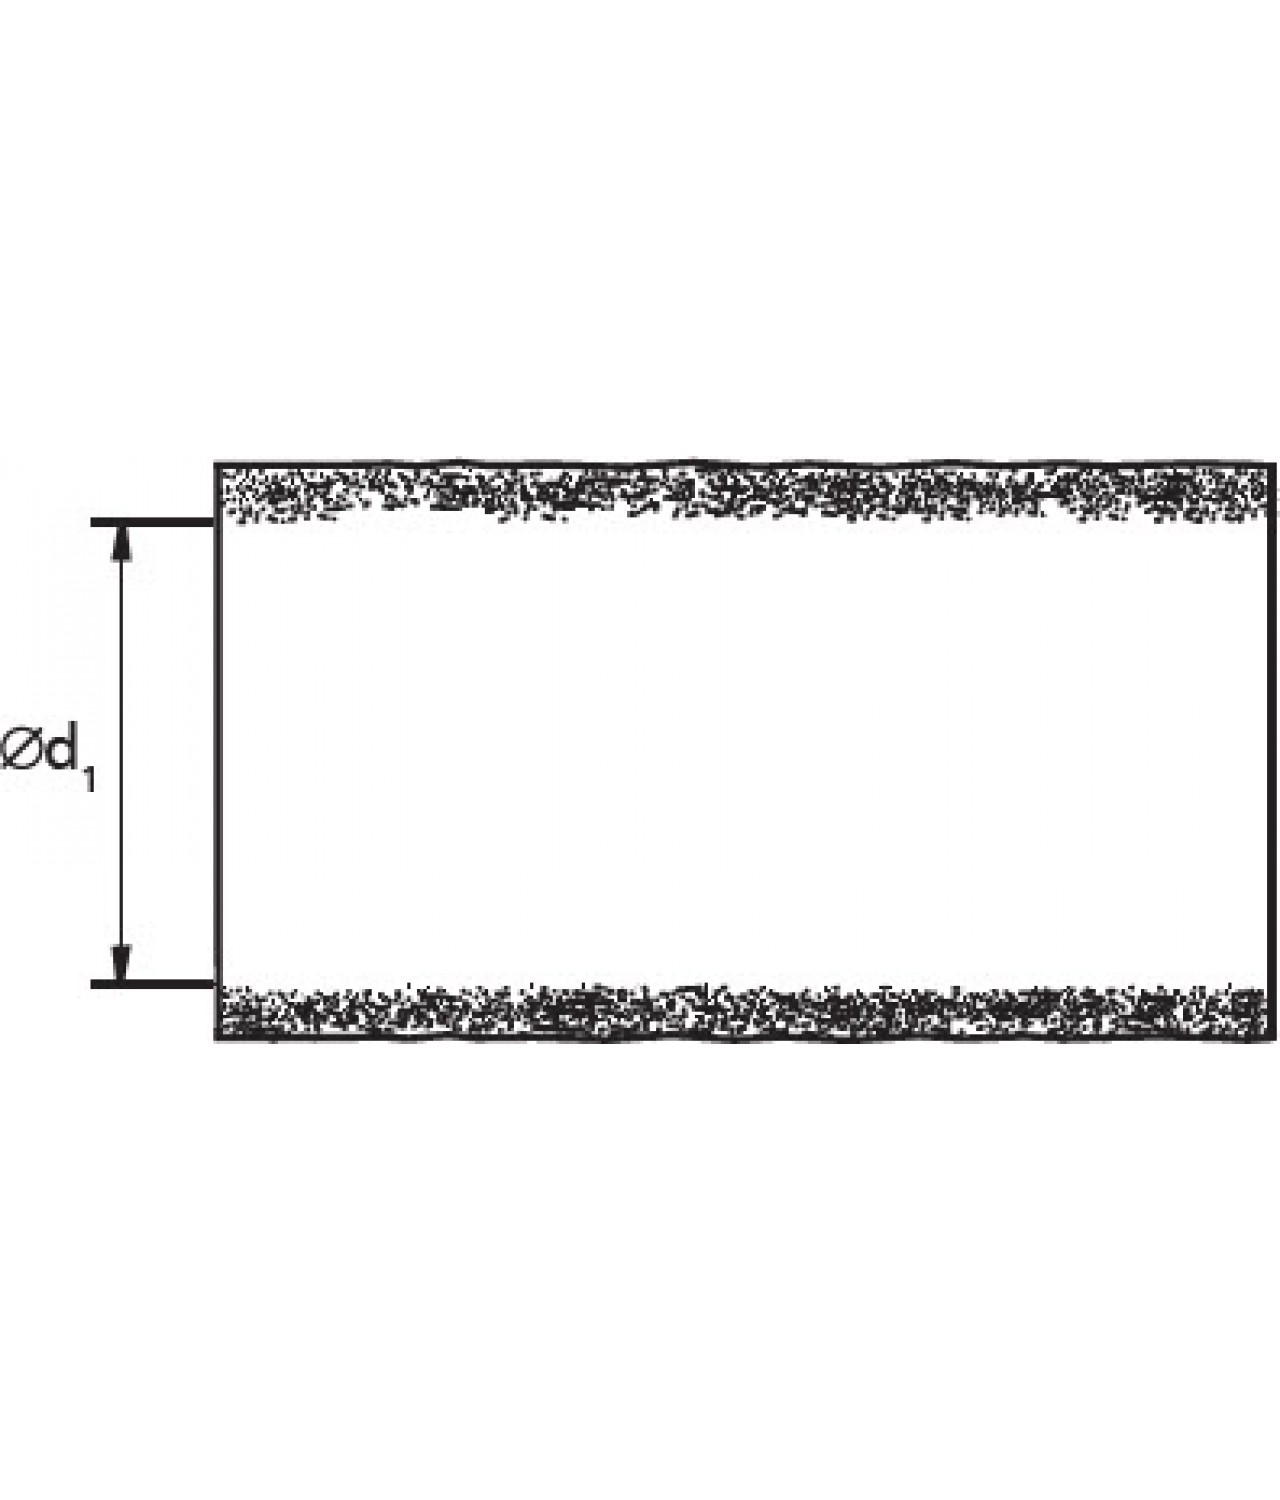 Ortakių antikondensacinė termoizoliacija ISO50/125/10, 50 mm Ø125 mm, L=10 m - brėžinys